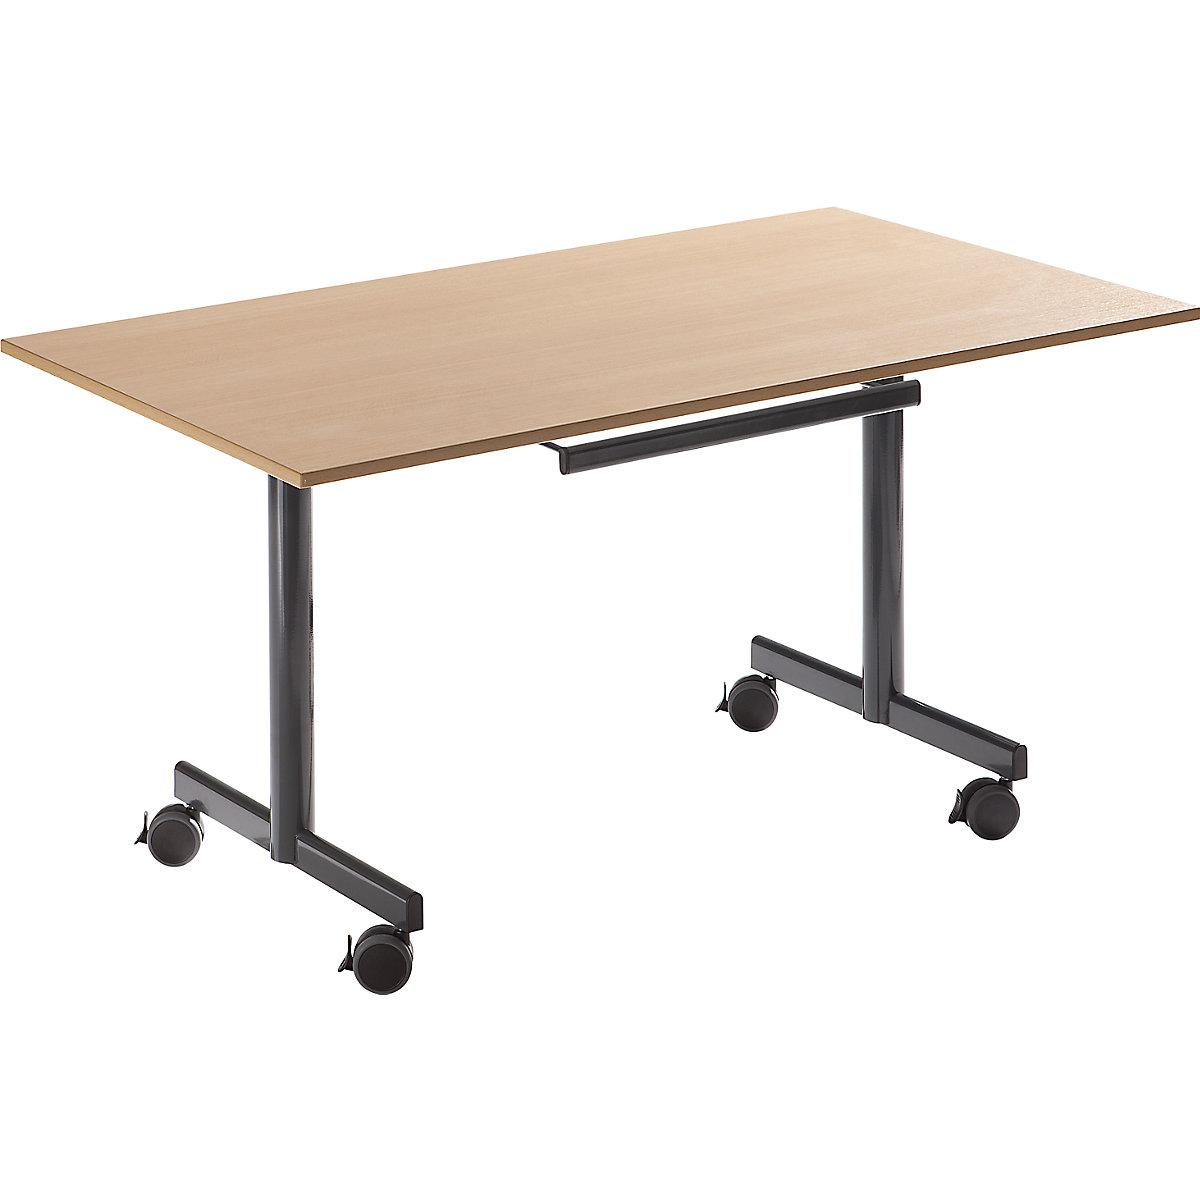 Stůl s odklopnou deskou, mobilní, v x š x h 720 x 1400 x 800 mm, bukový dekor-3